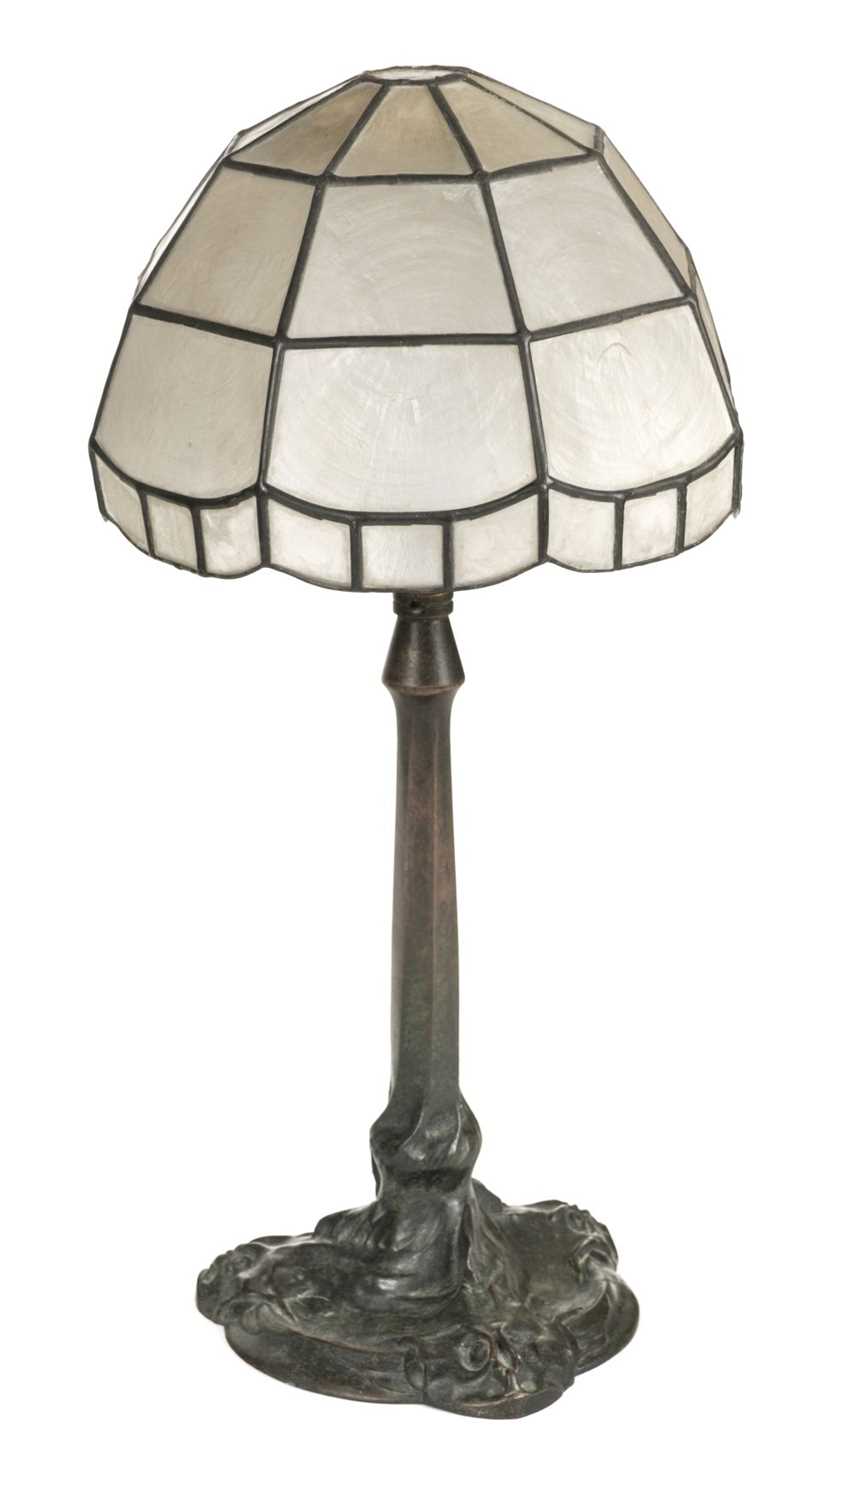 Lot 36 - Table Lamp. An Art Nouveau bronze table lamp c.1890